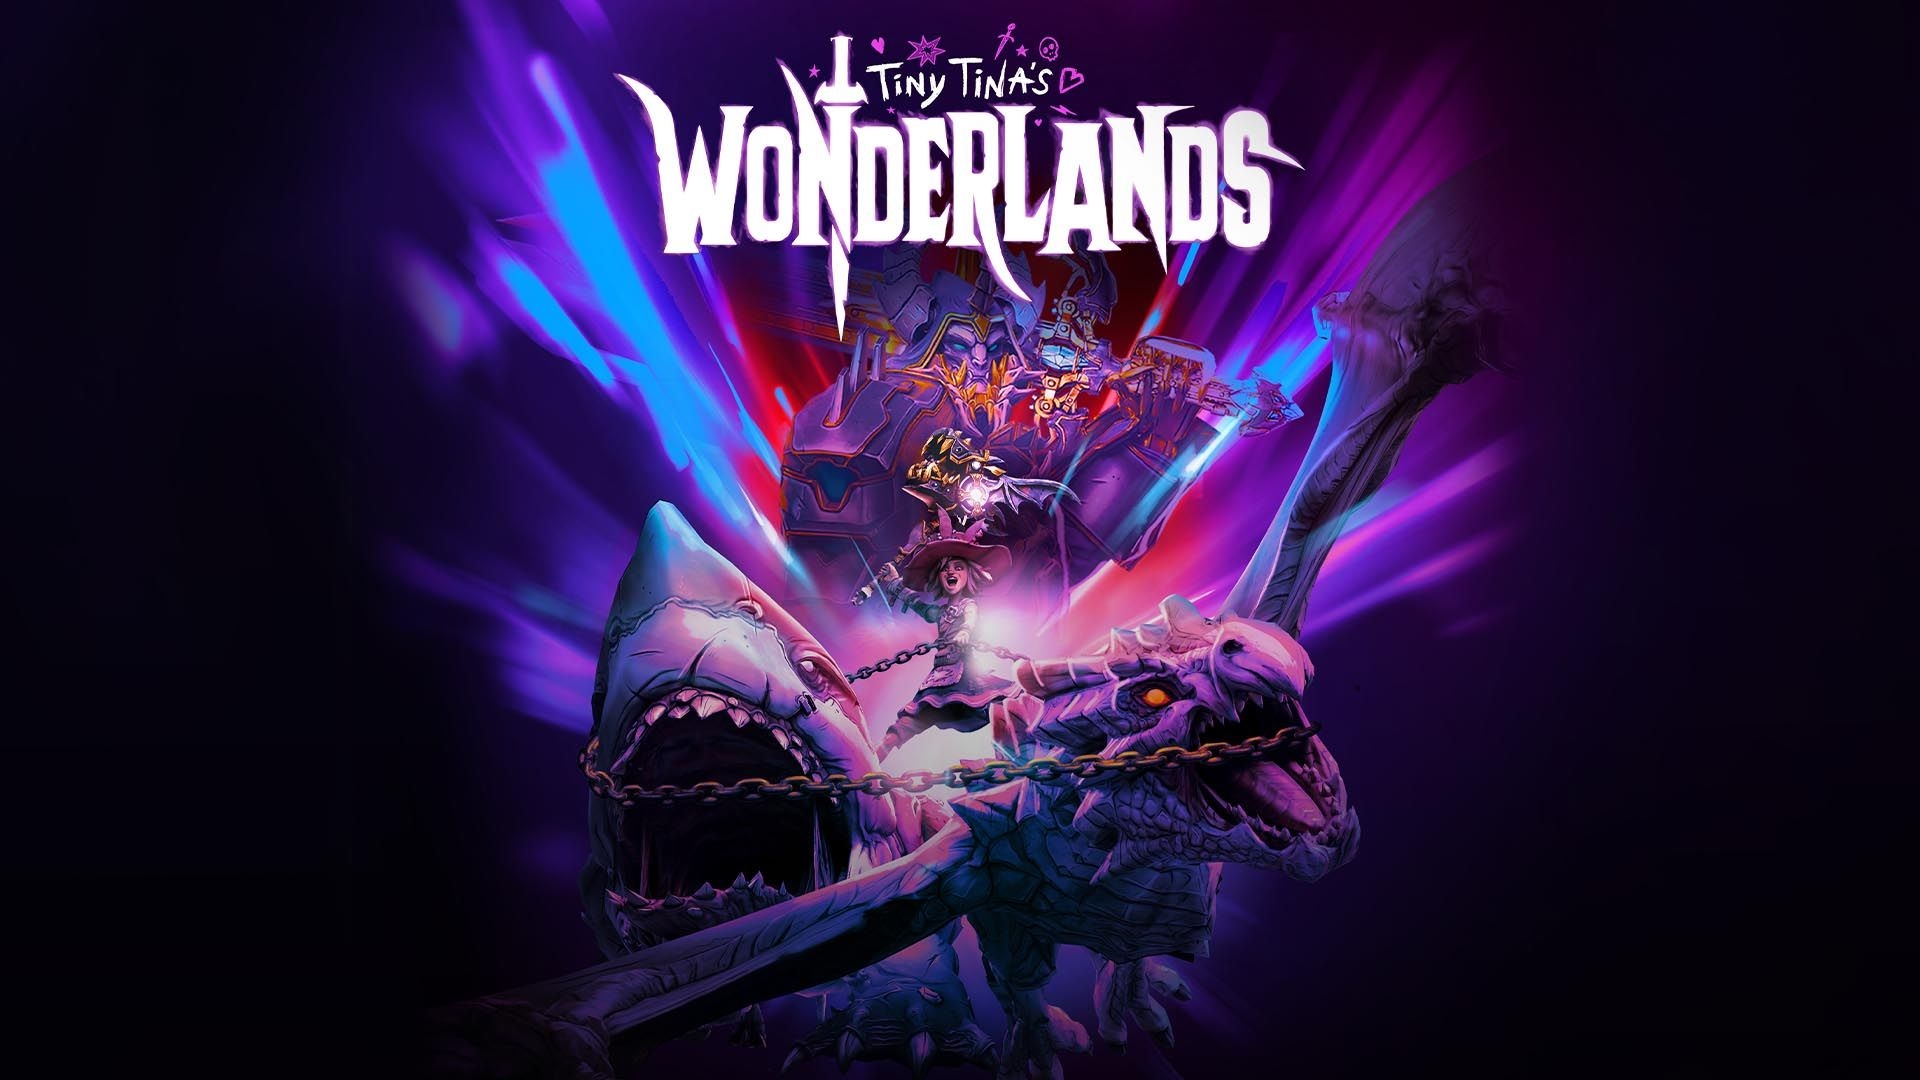 download wonderlands reddit for free